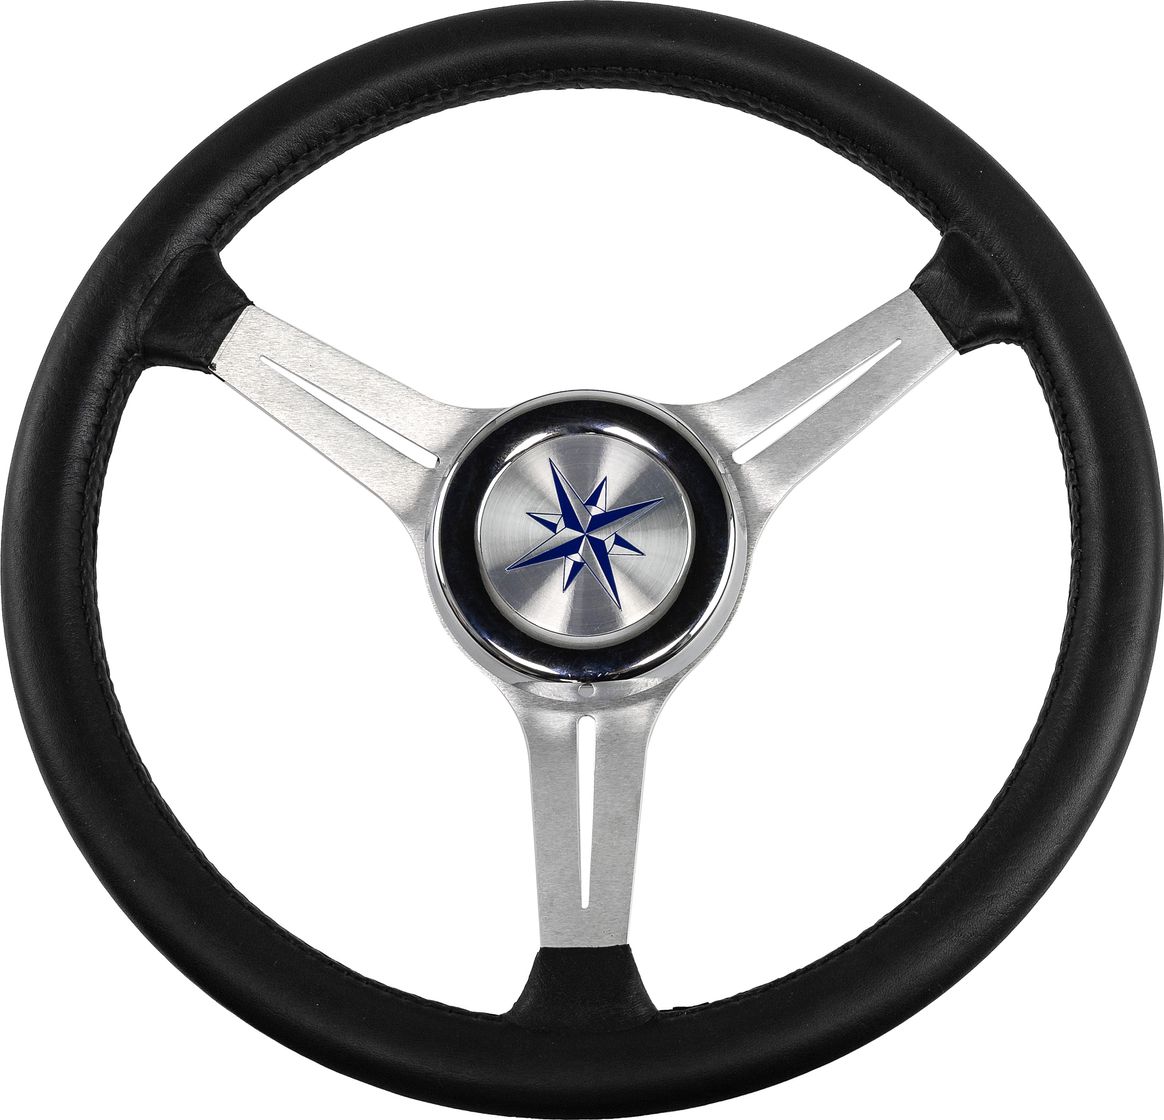 Рулевое колесо LYRA обод черный, спицы серебряные д. 370 мм VN137003-01 рулевое колесо orion обод черносиний спицы серебряные д 355 мм vn960101 99